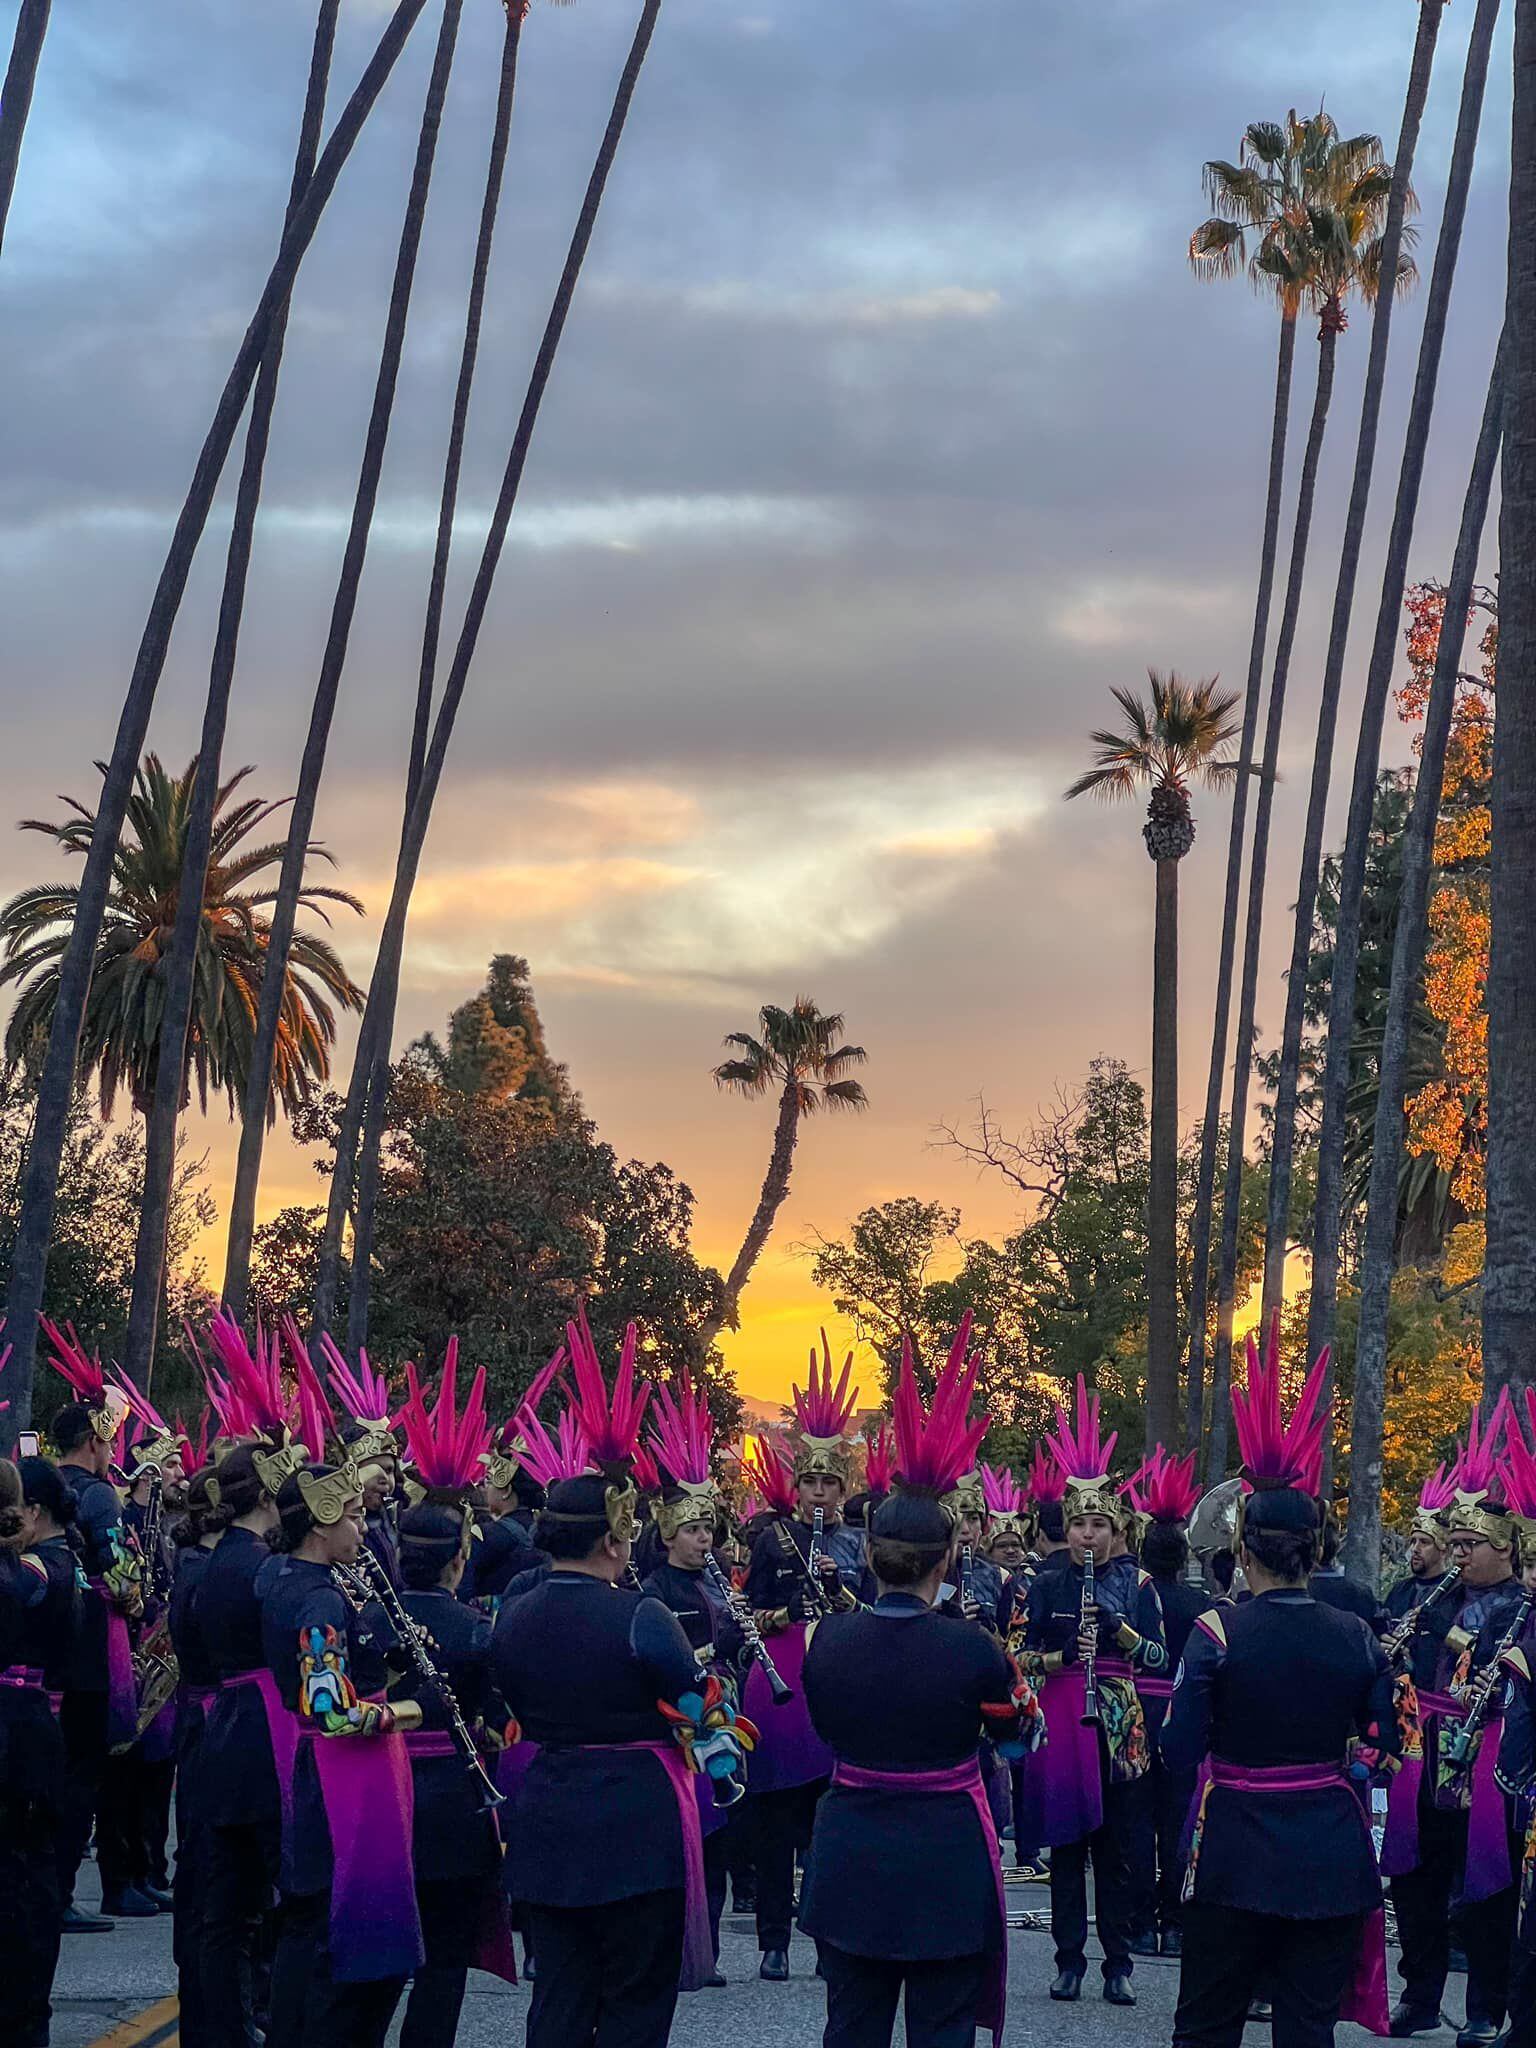 La Banda Municipal de Zarcero participa en el Desfile de las Rosas en Pasadena, California. La agrupación subió una imagen previo al inicio de la actividad.